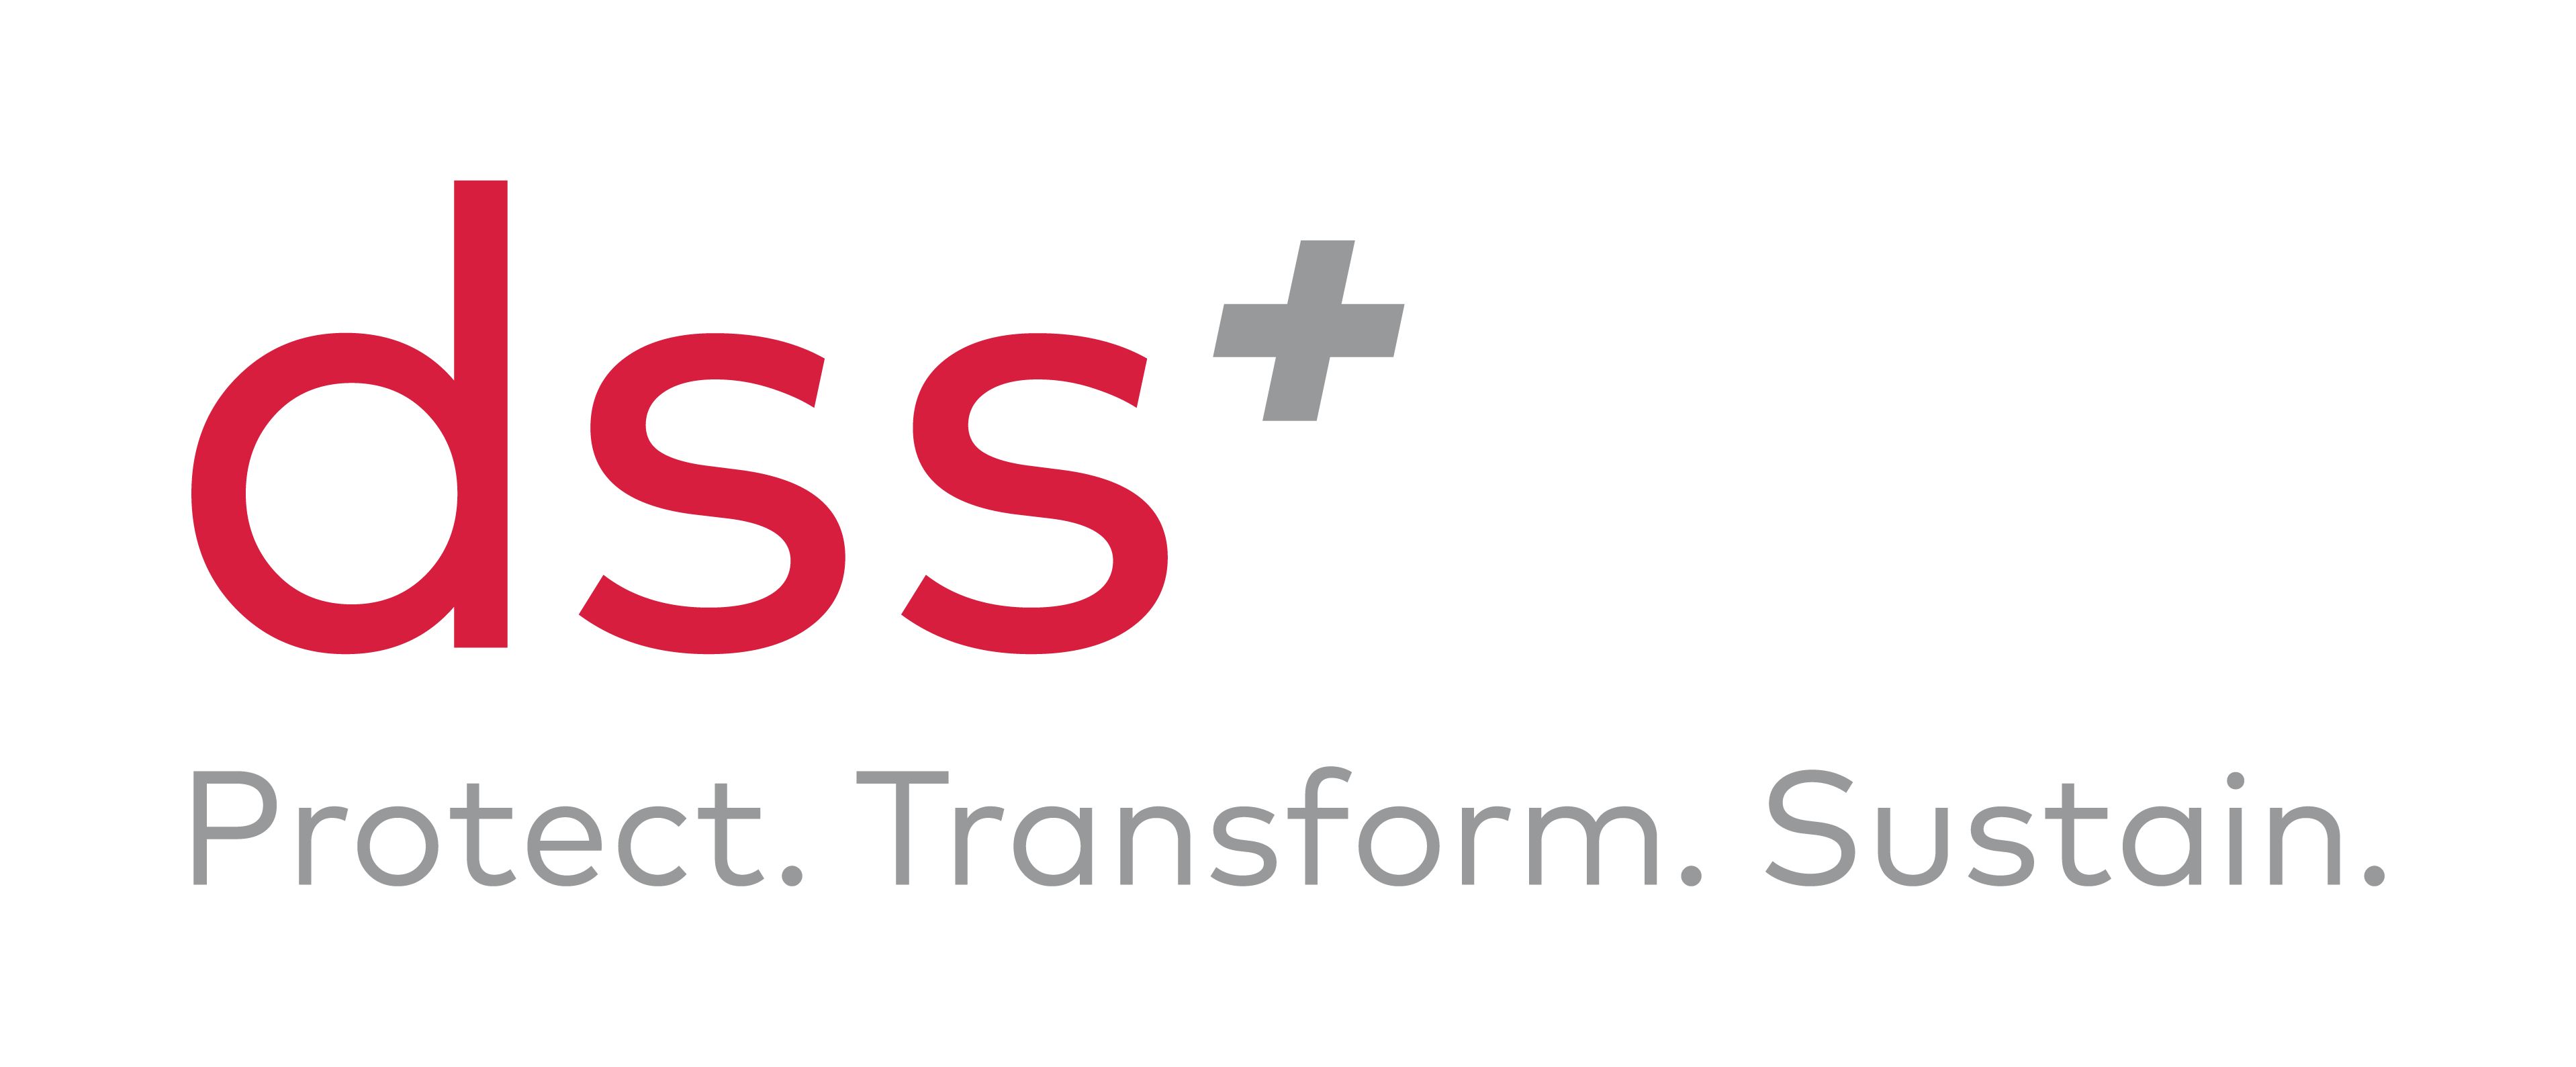 dss+ logo with tagline